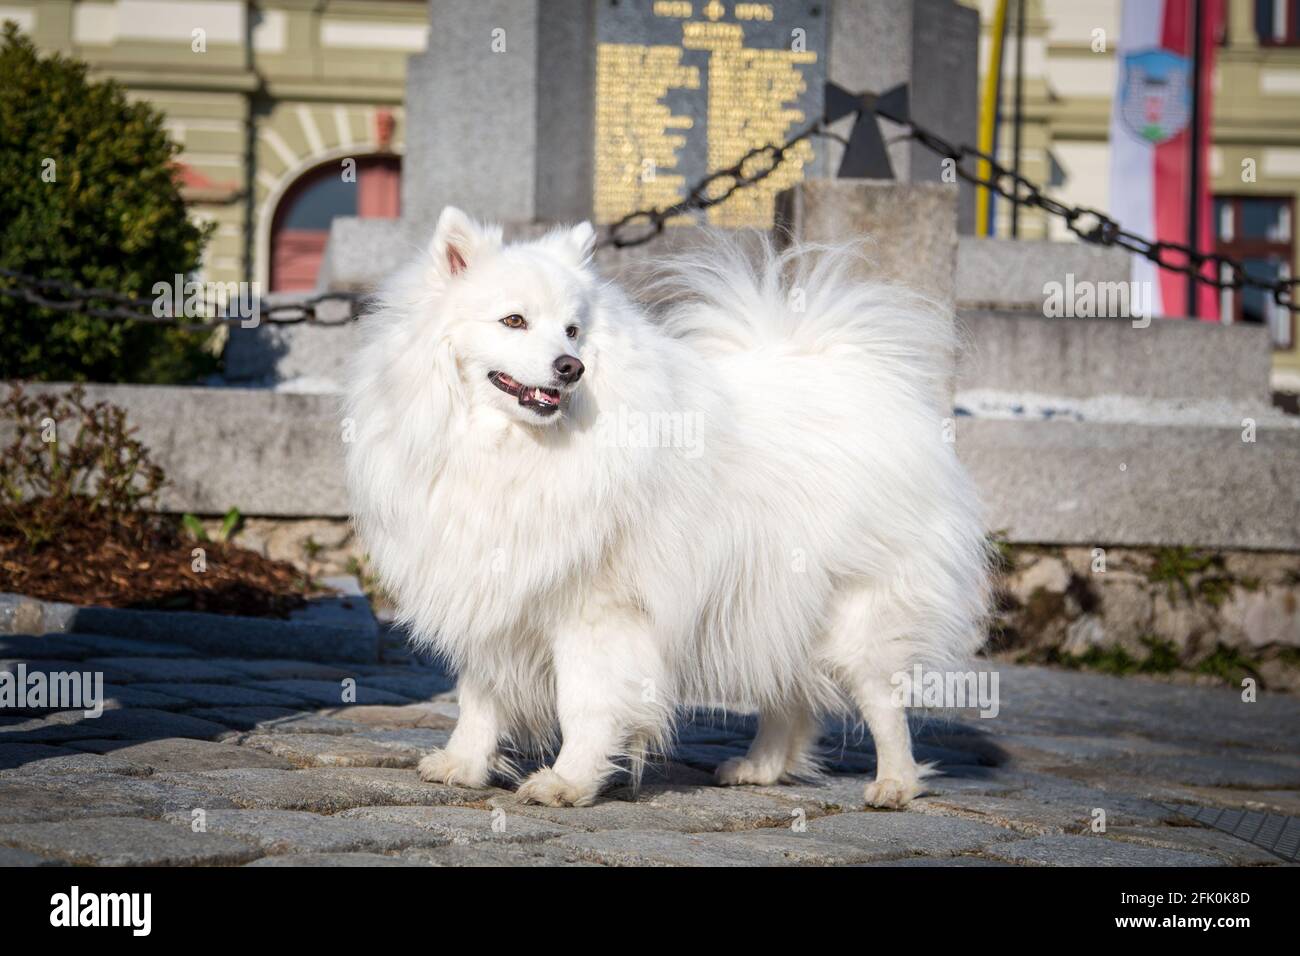 Bianco giapponese Spitz in posa nella città di Weitra, Austria. Fotografia di cane urbano Foto Stock